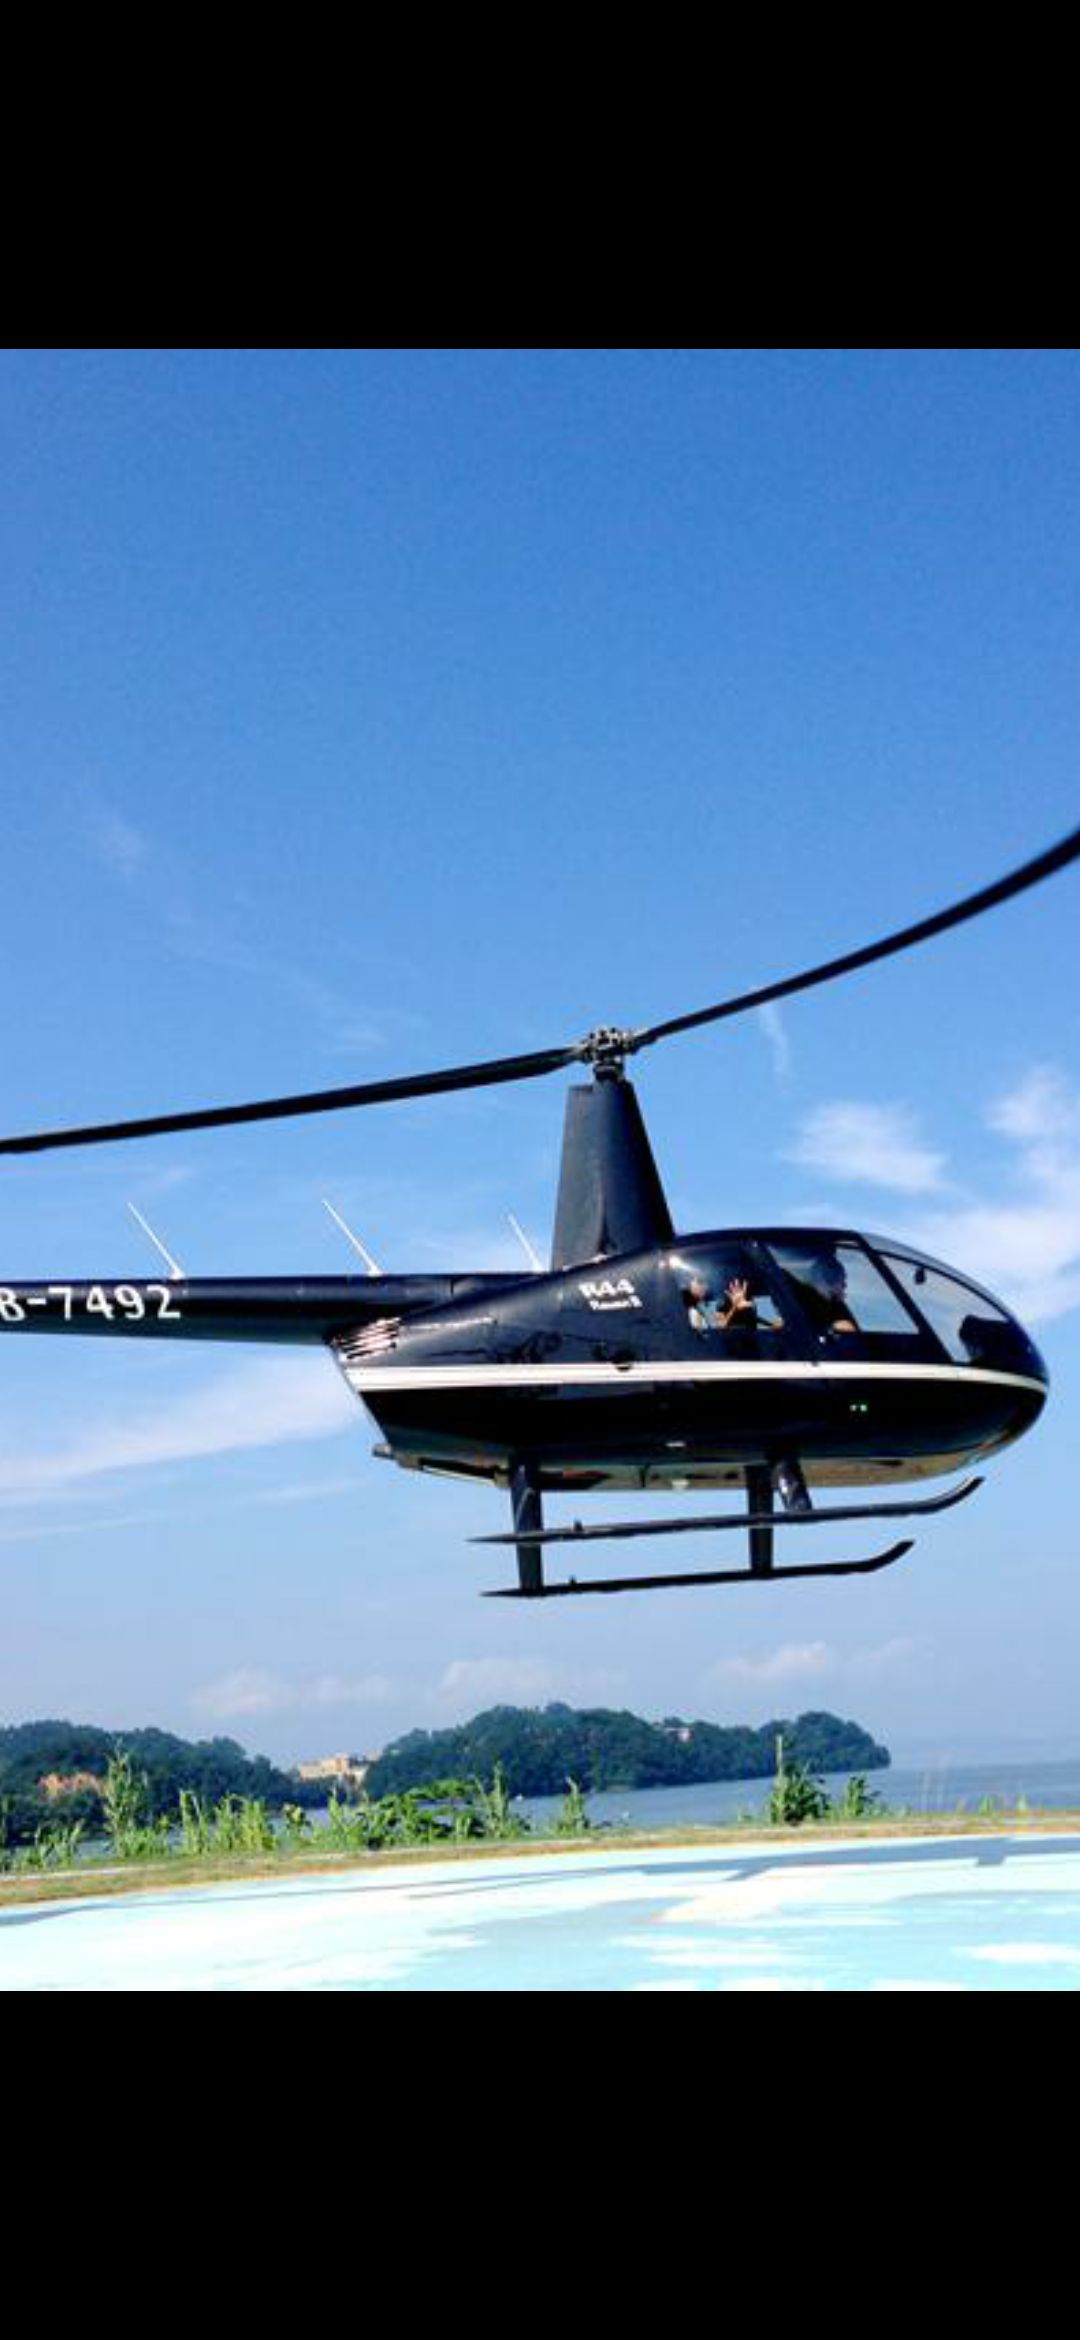 首航直升机十一假期低空旅游共接待游客五千余人_资讯频道_悦游全球旅行网